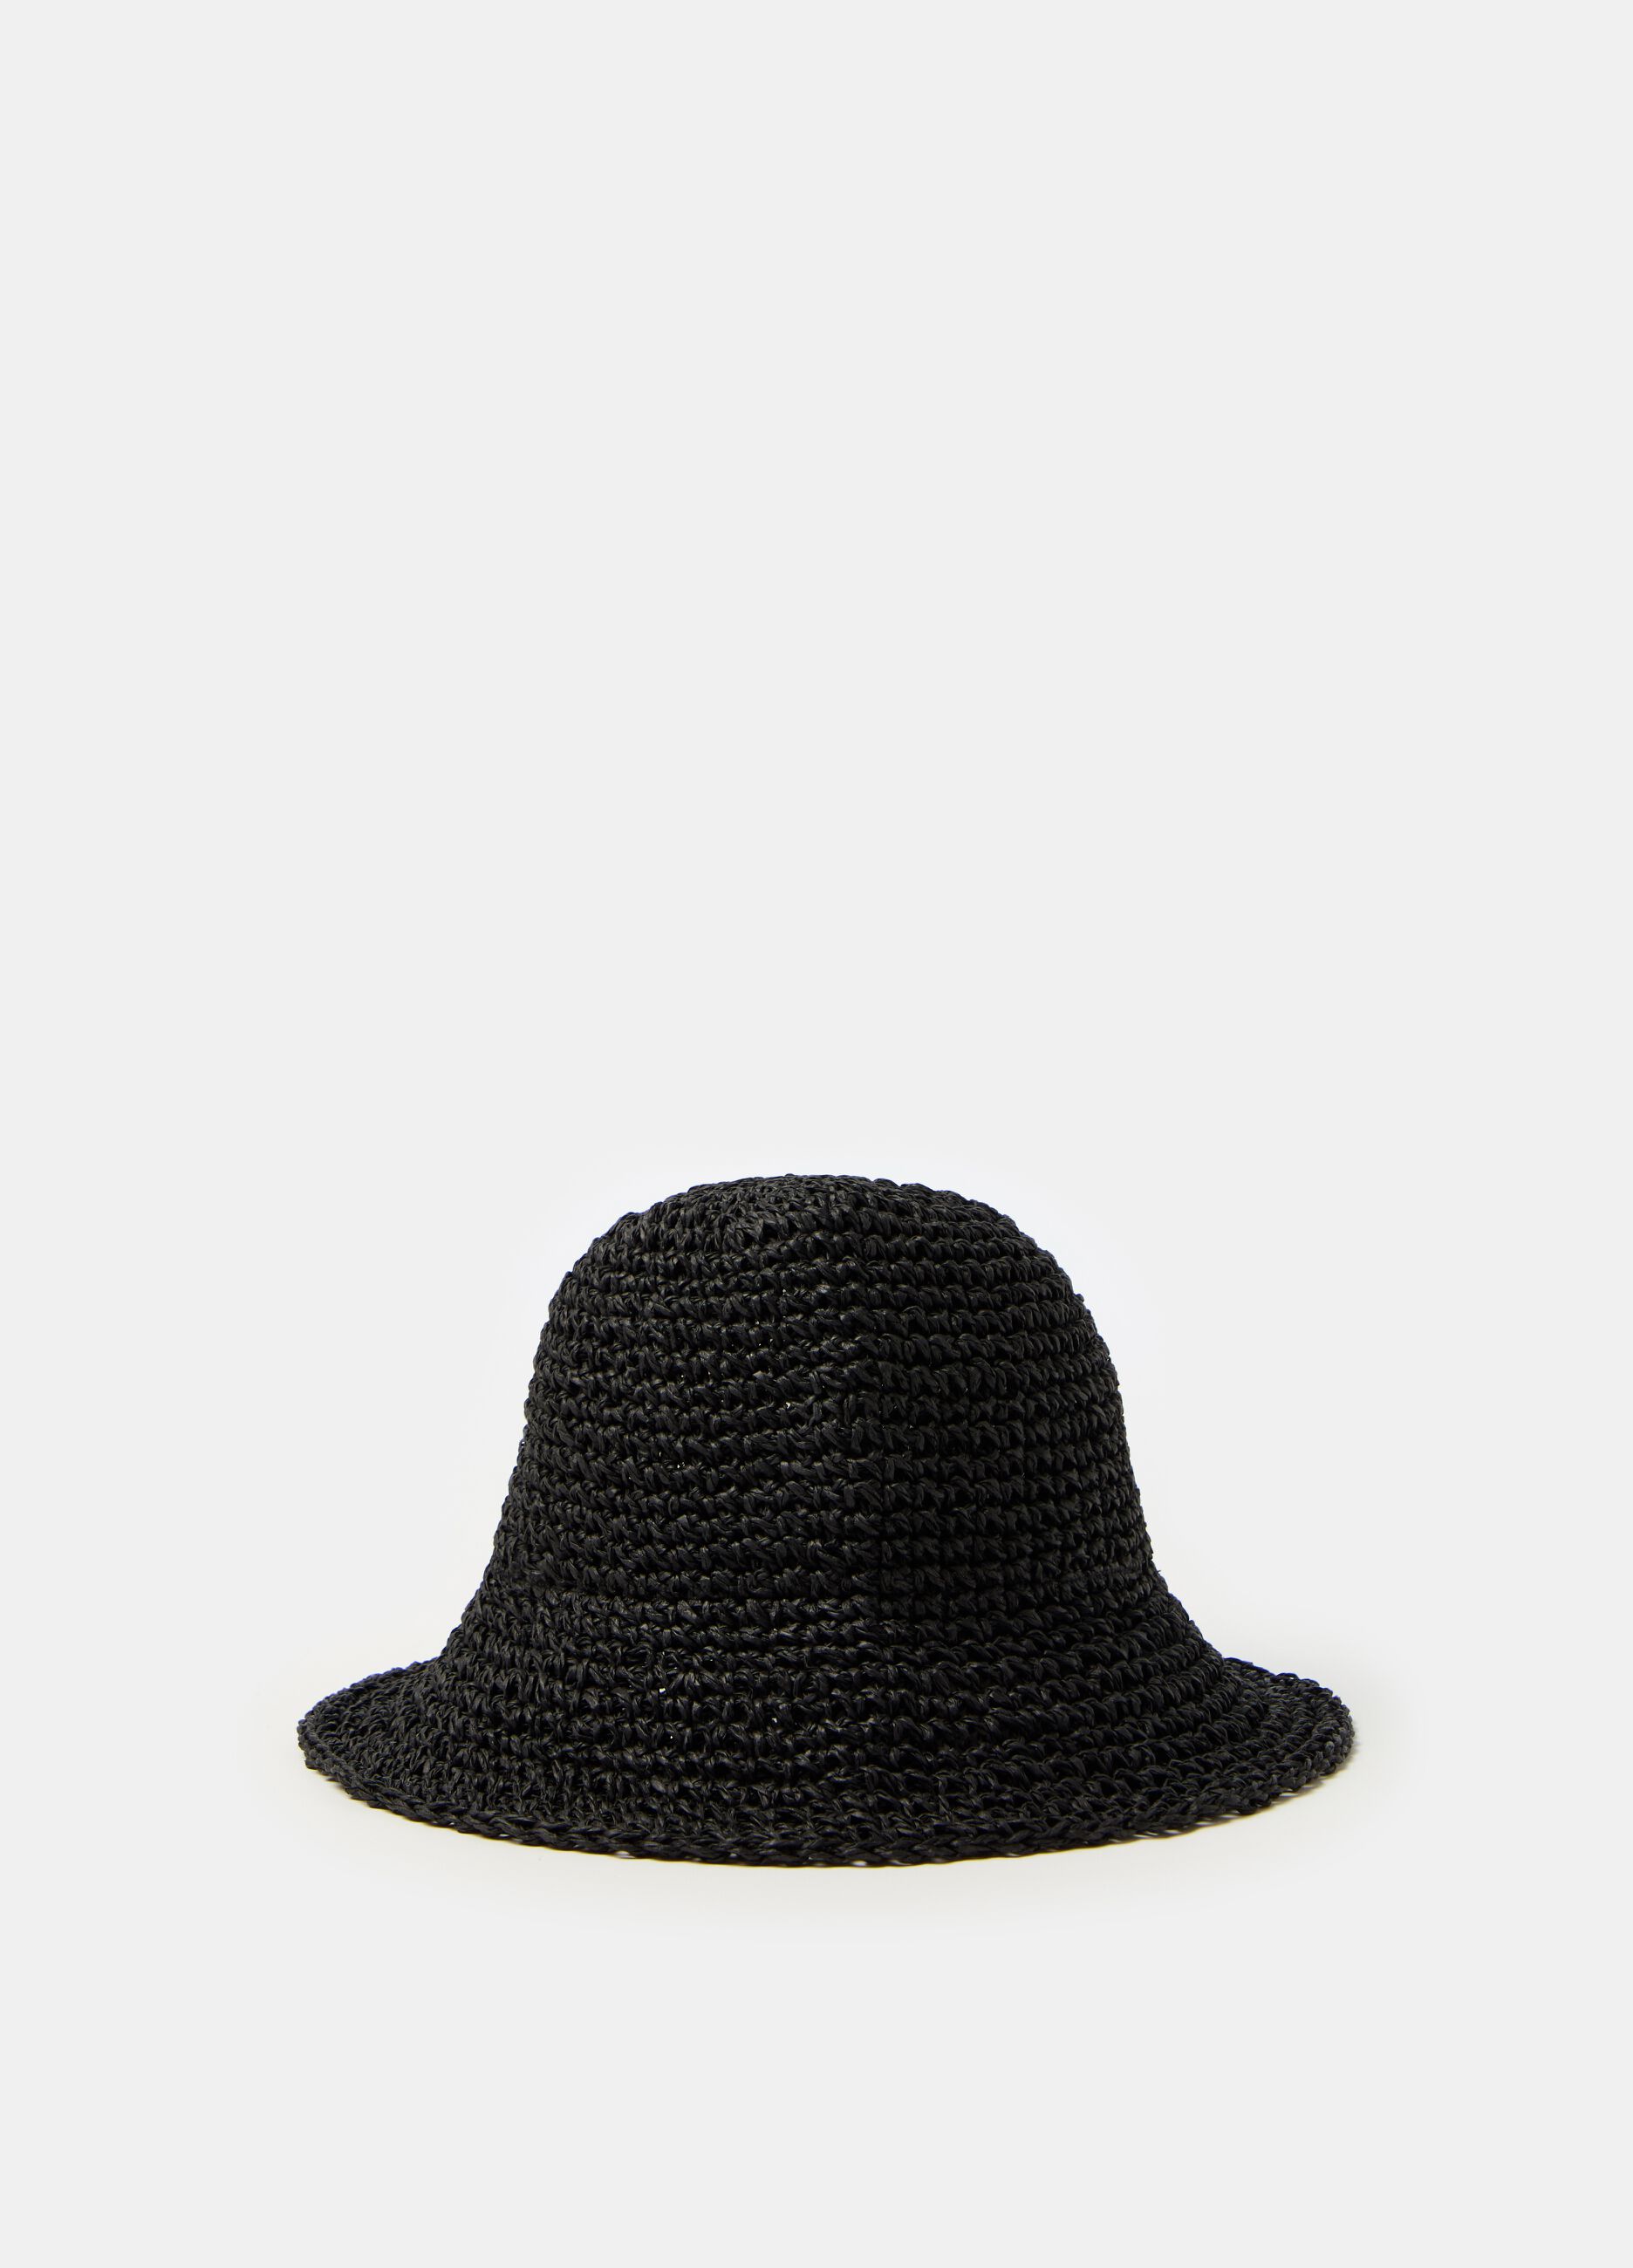 Raffia hat